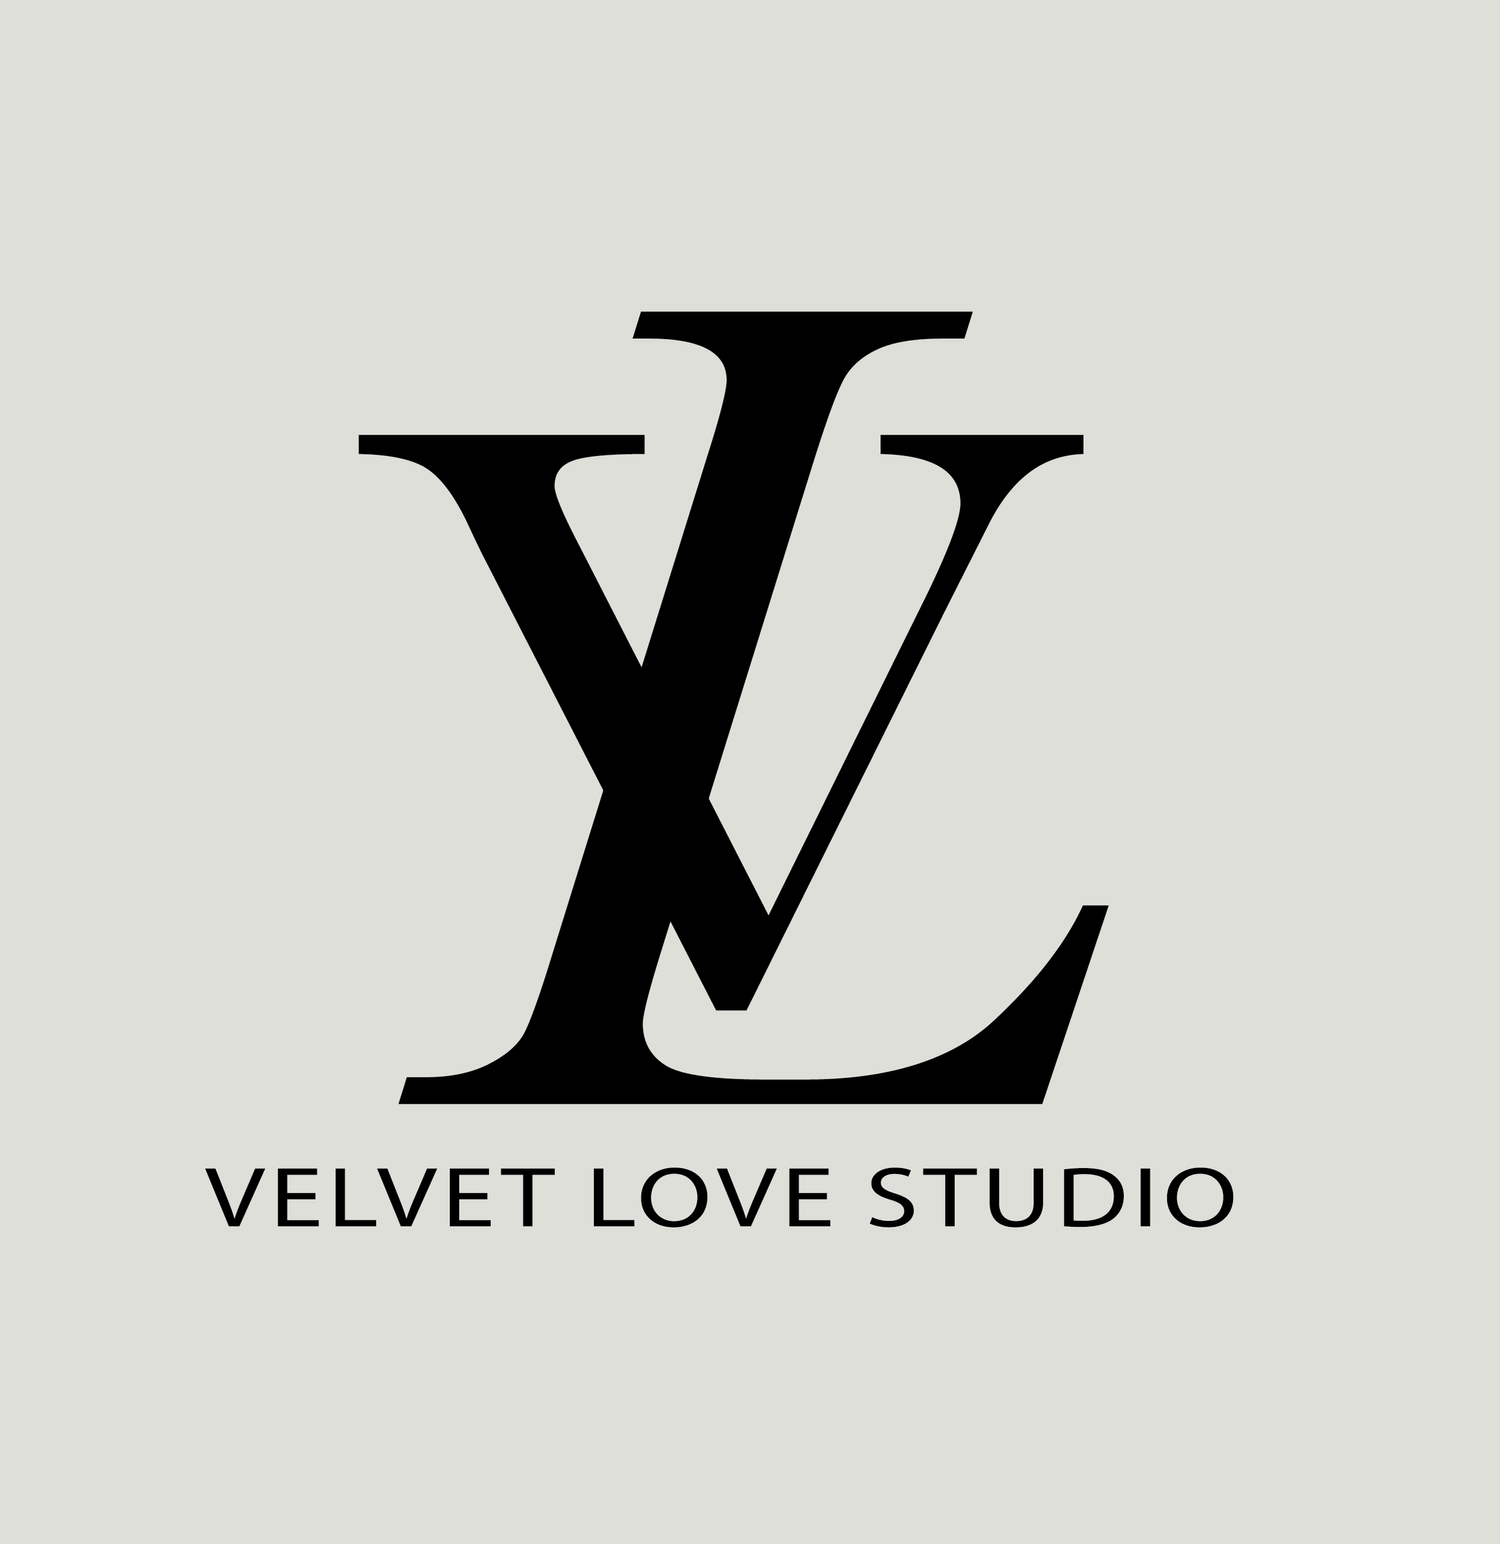 Velvet Love Studio